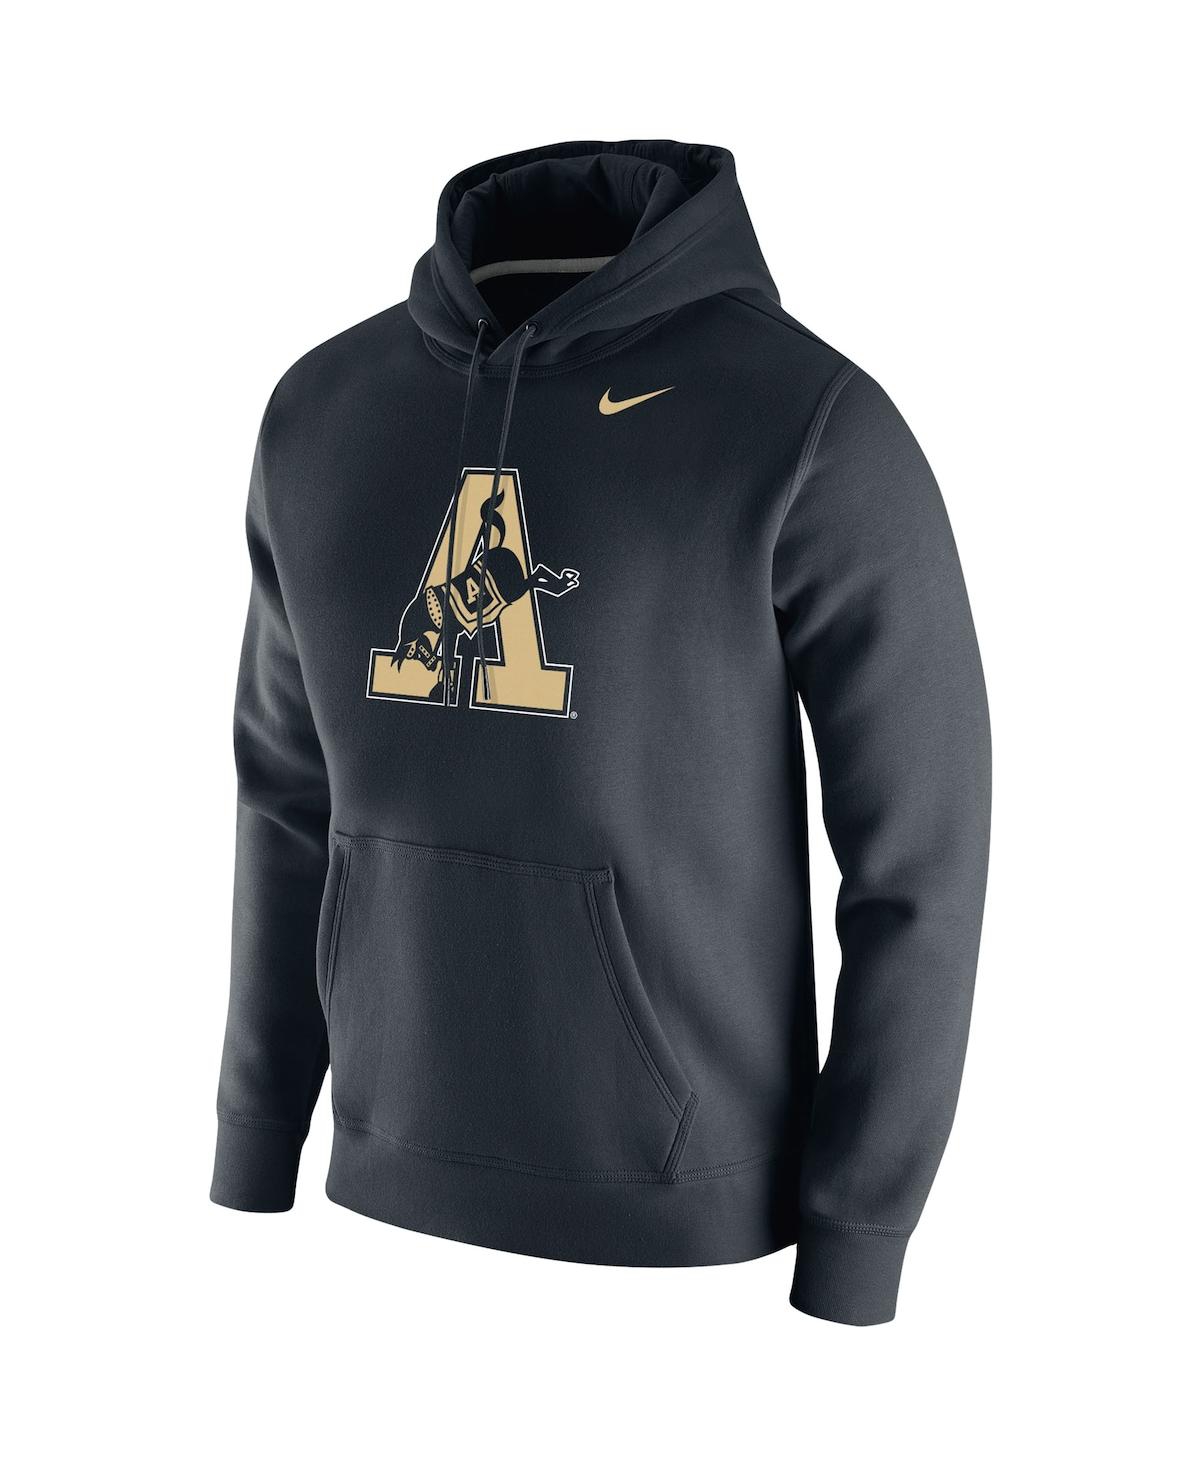 Shop Nike Men's  Black Army Black Knights Vintage-like School Logo Pullover Hoodie